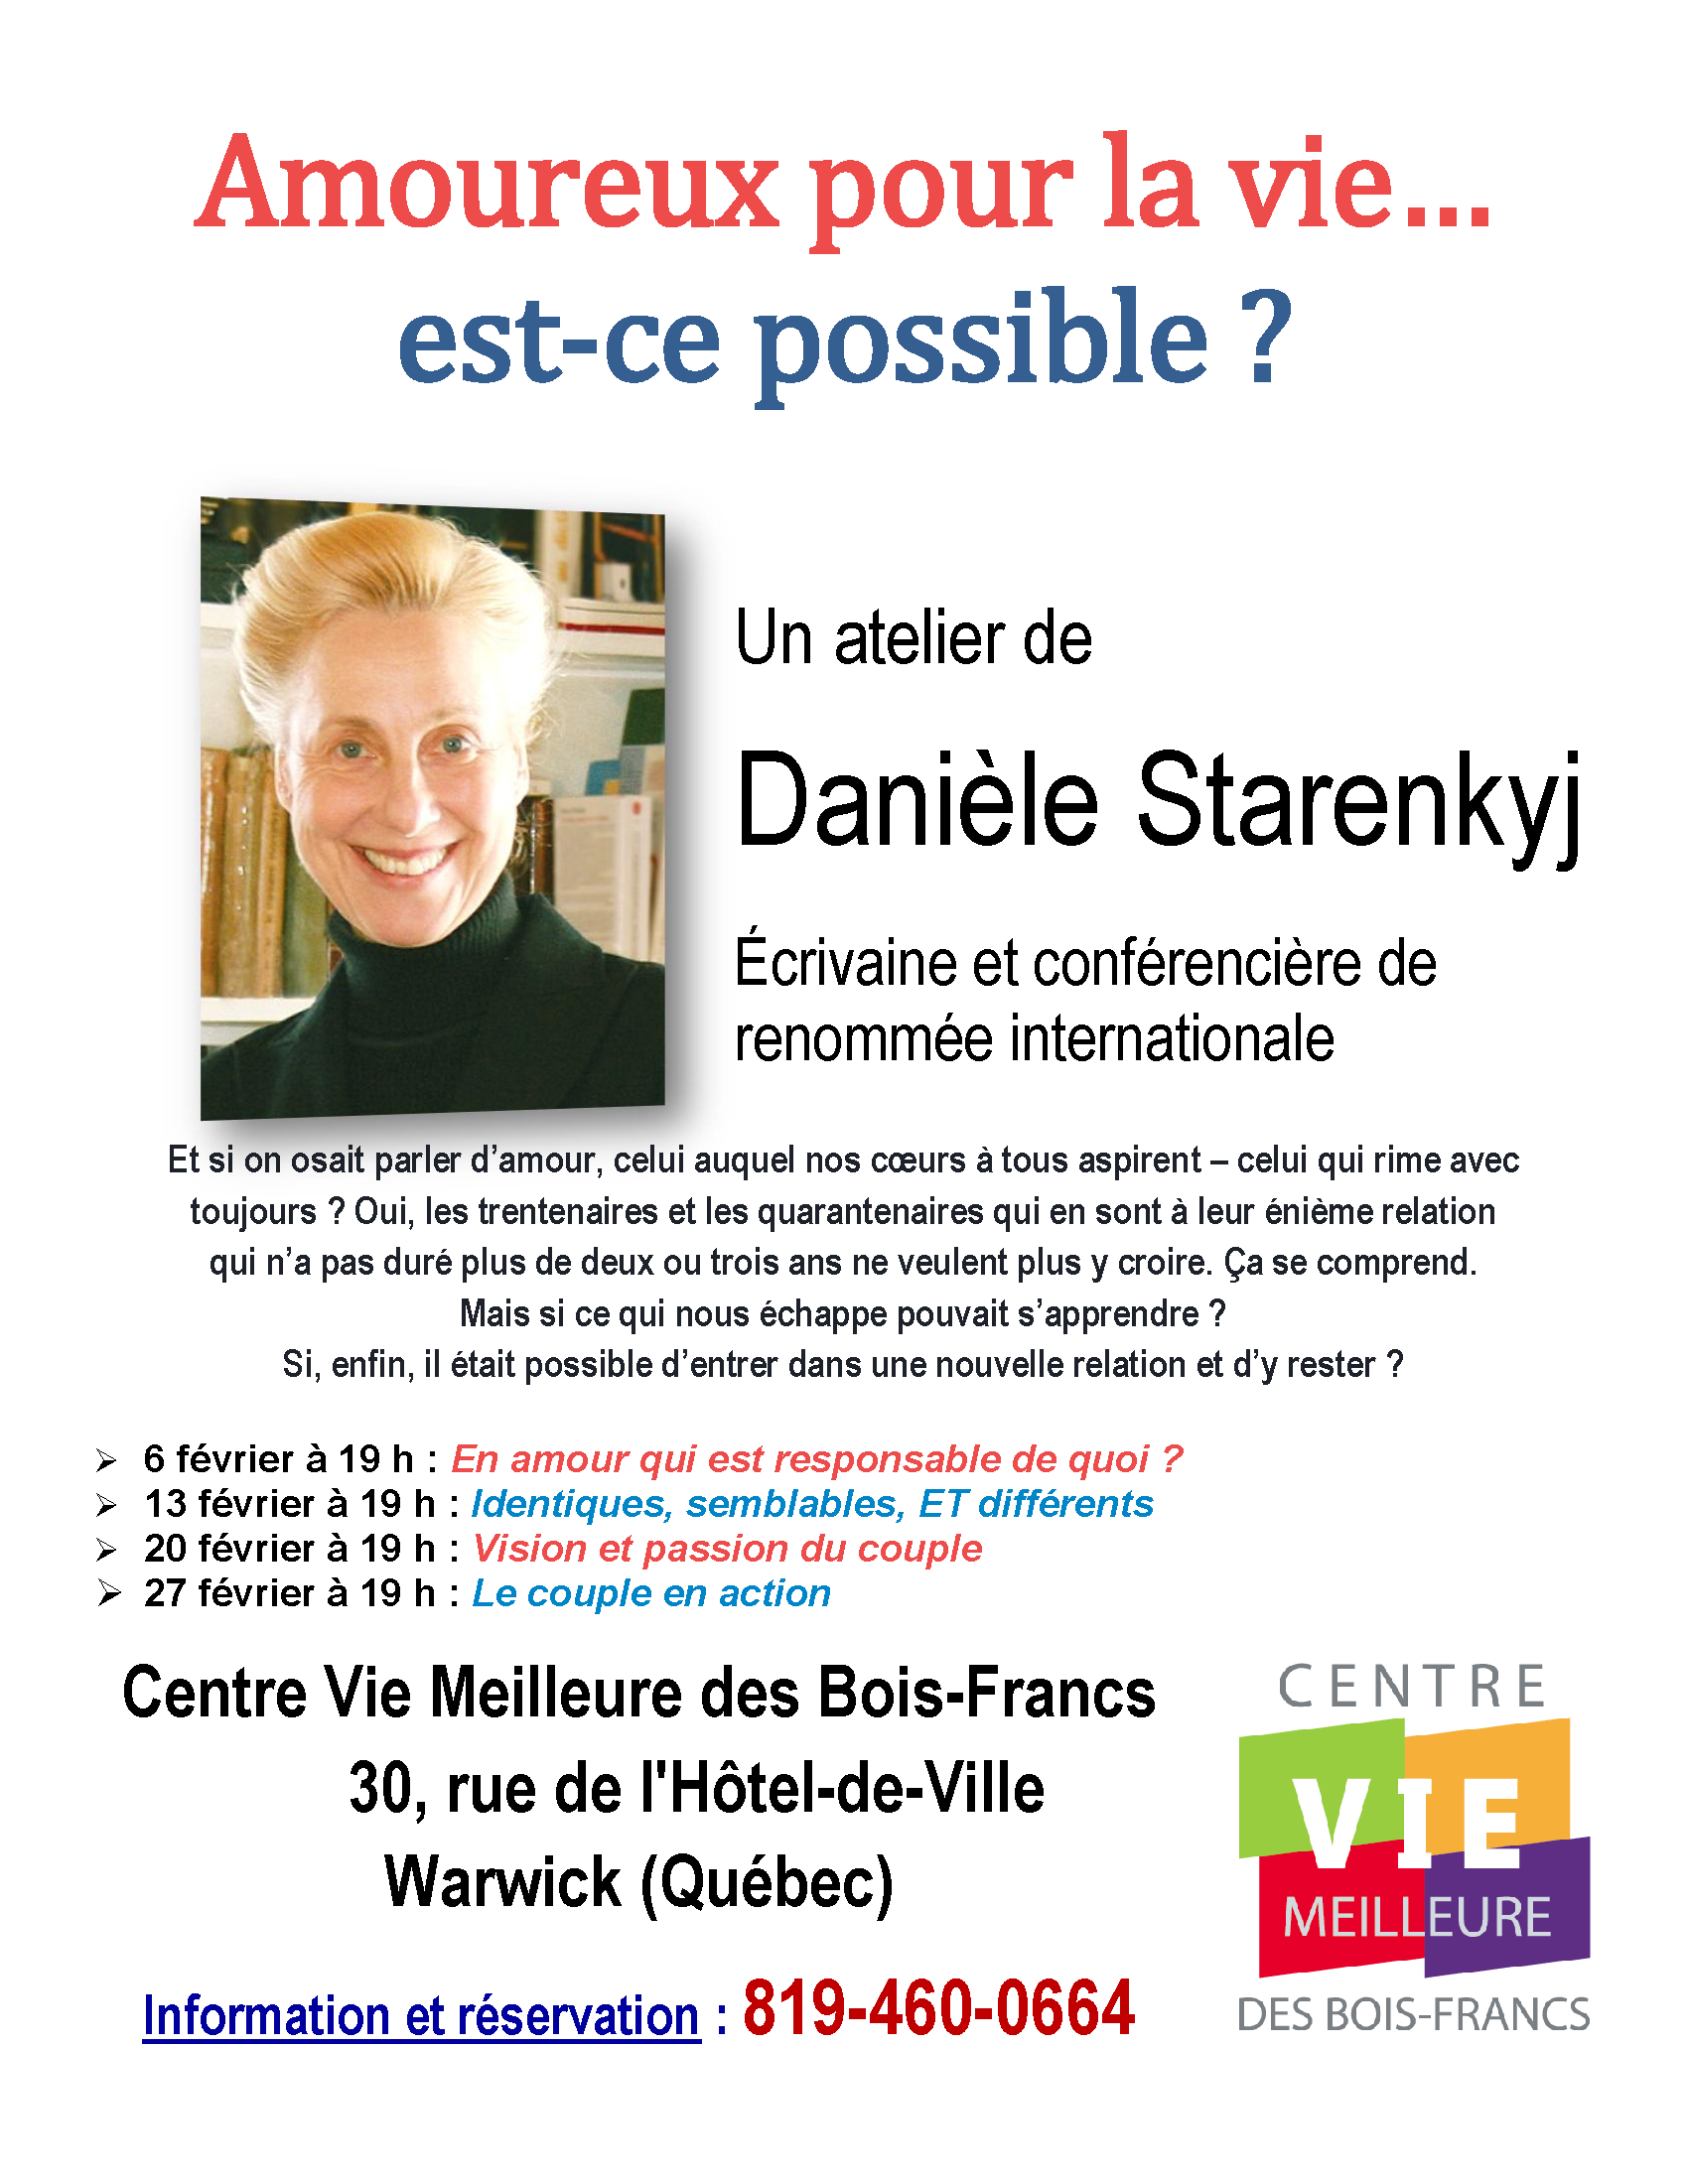 Poster-AMOUREUX POUR LA VIE EST-CE POSSIBLE-Danièle Starenkyj